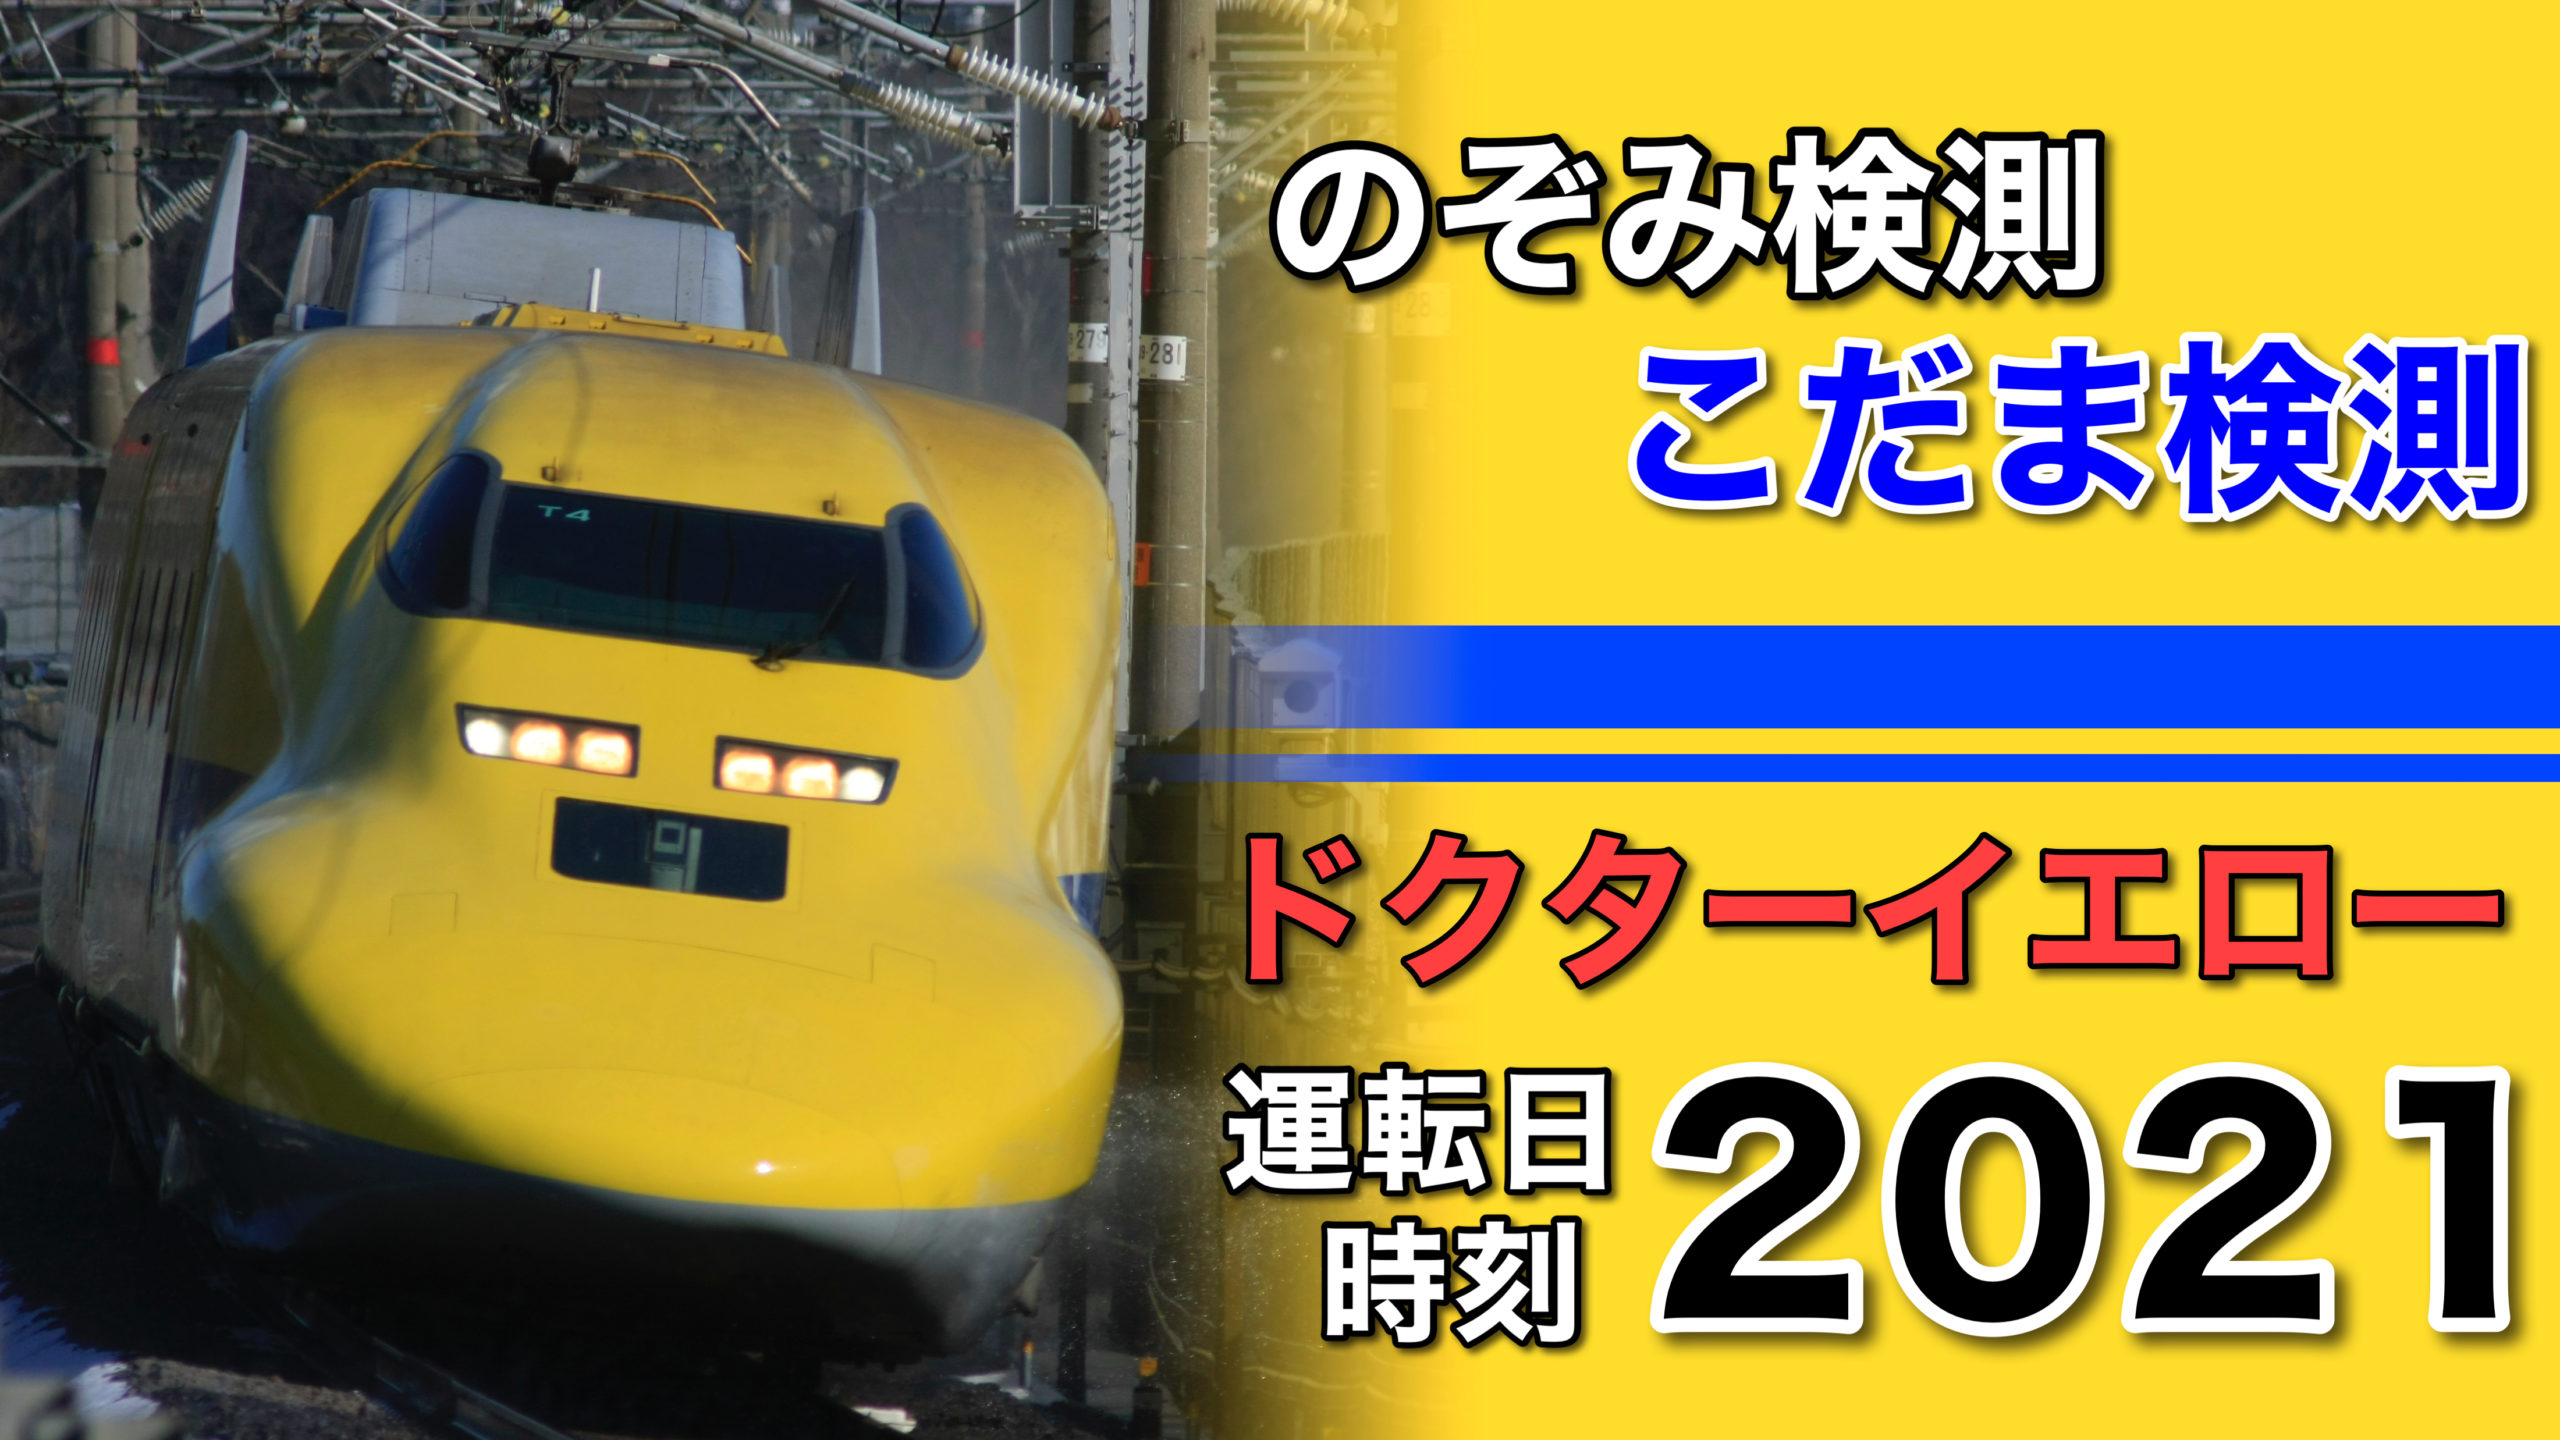 ドクターイエロー 21年改正 幸せの黄色い新幹線のぞみ こだま検測 時刻表 鉄道ファンの待合室